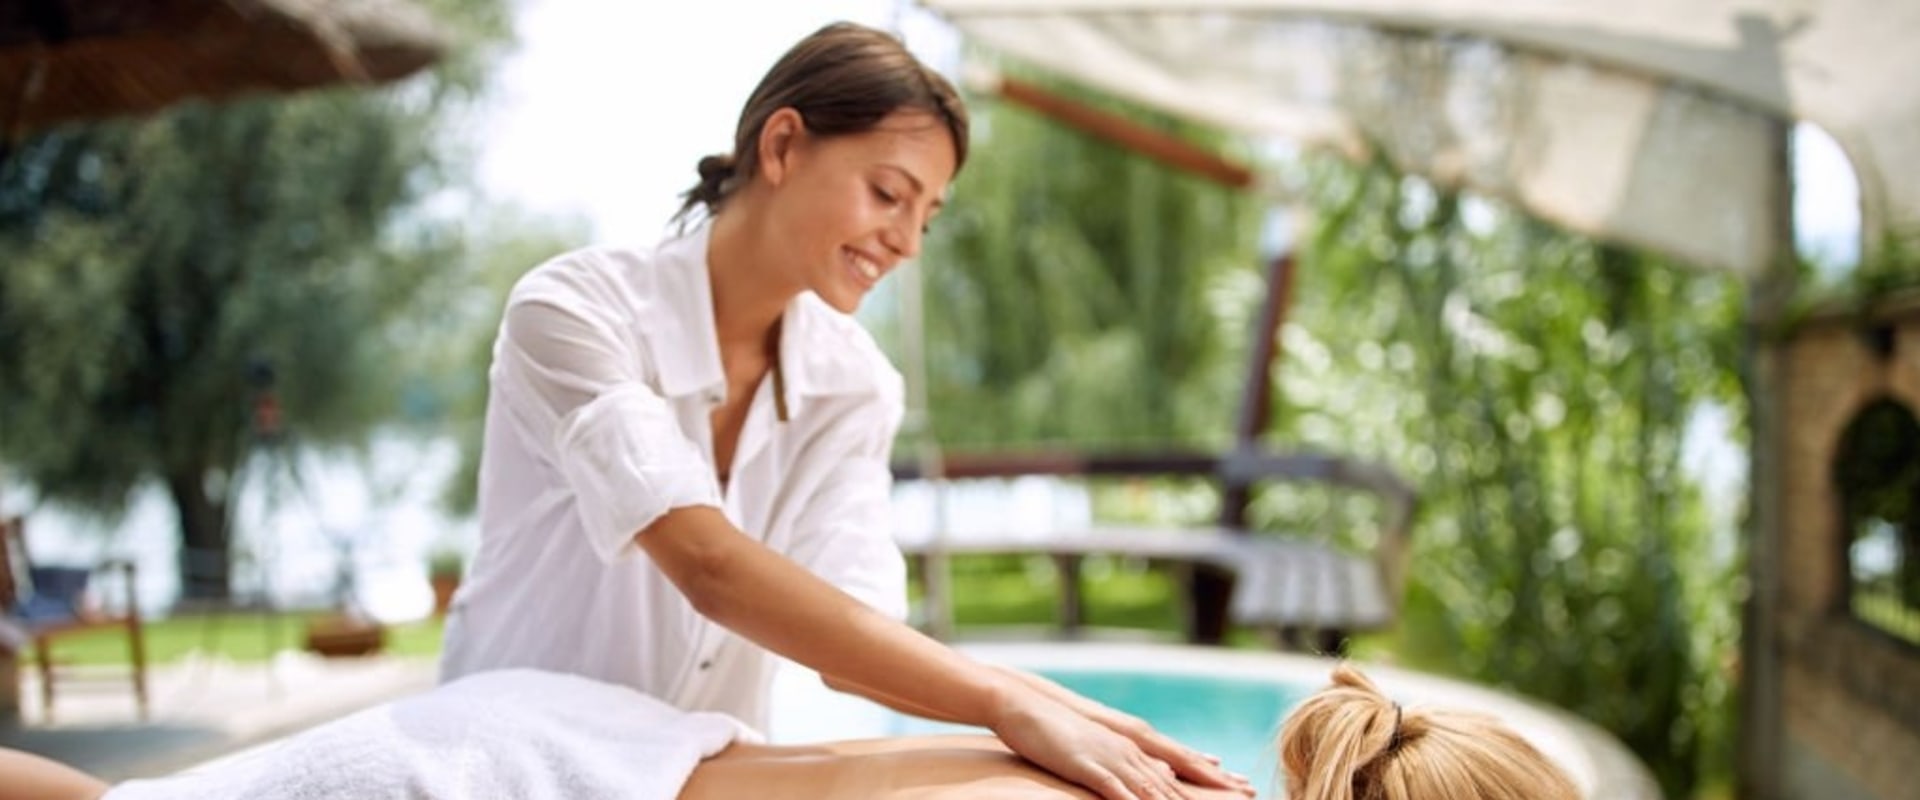 Thai Massage Vs Deep Tissue Massage Which Is Better